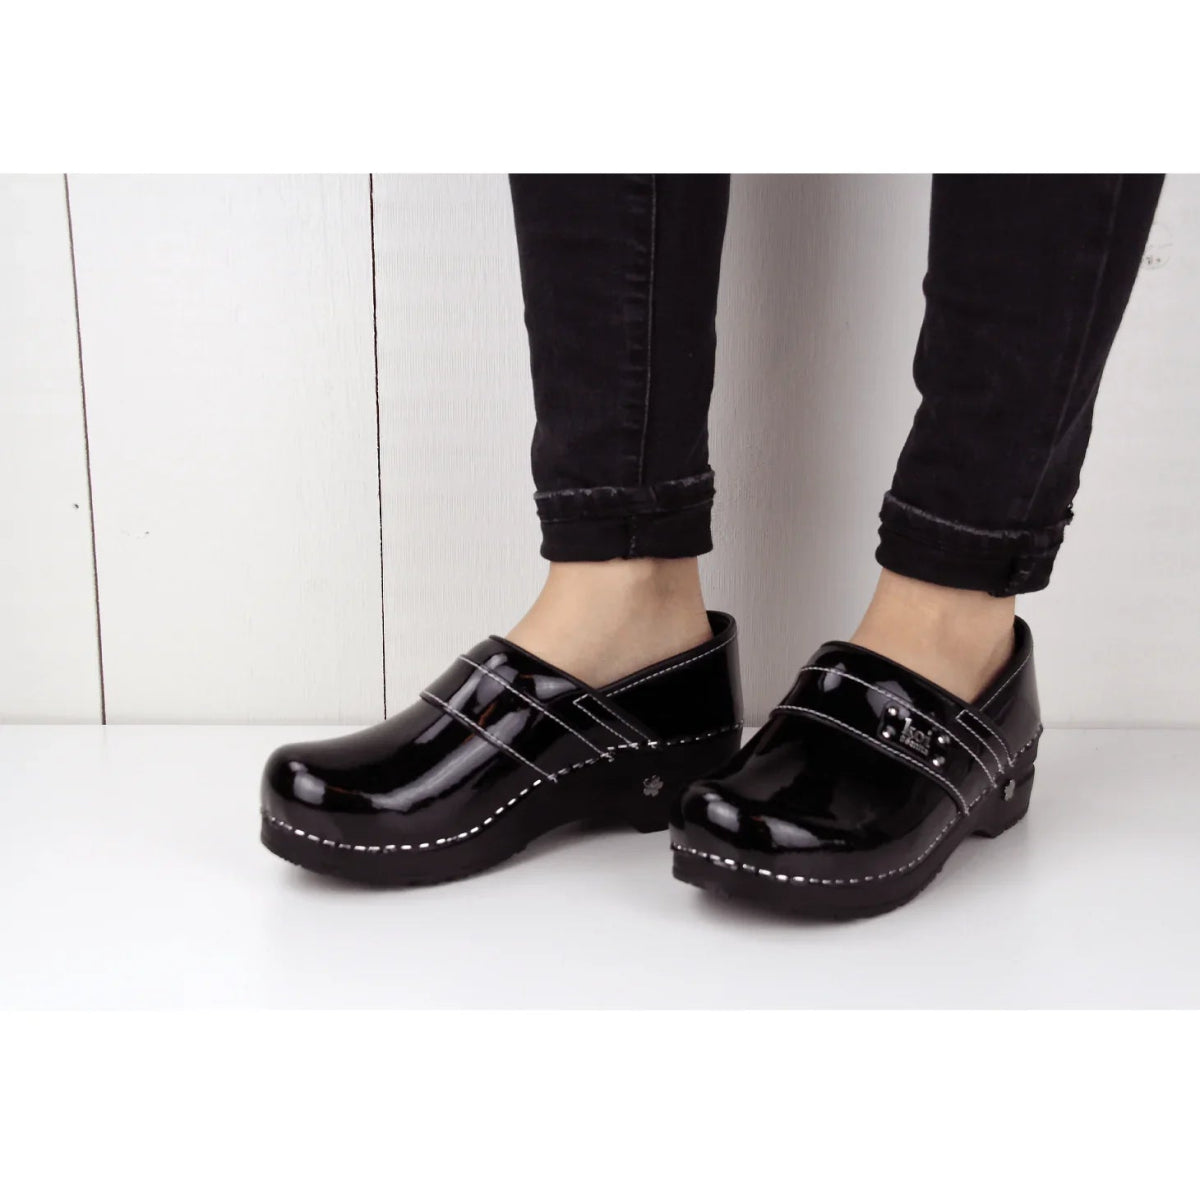 SANITA LINDSEY WOMEN CLOG IN BLACK - TLW Shoes